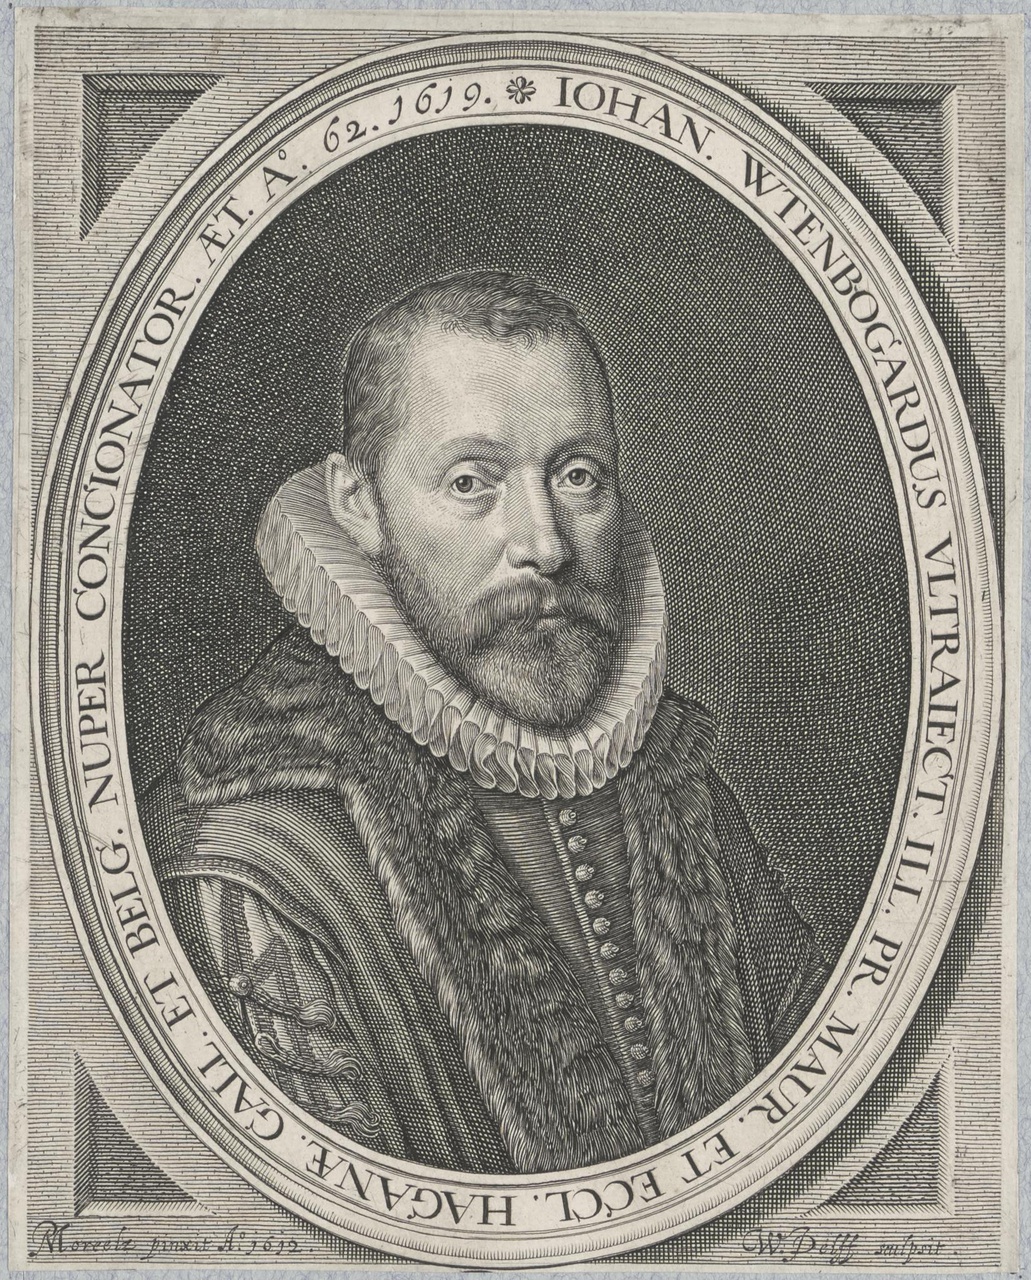 Portret van Johannes Wtenbogaert (1557-1644)